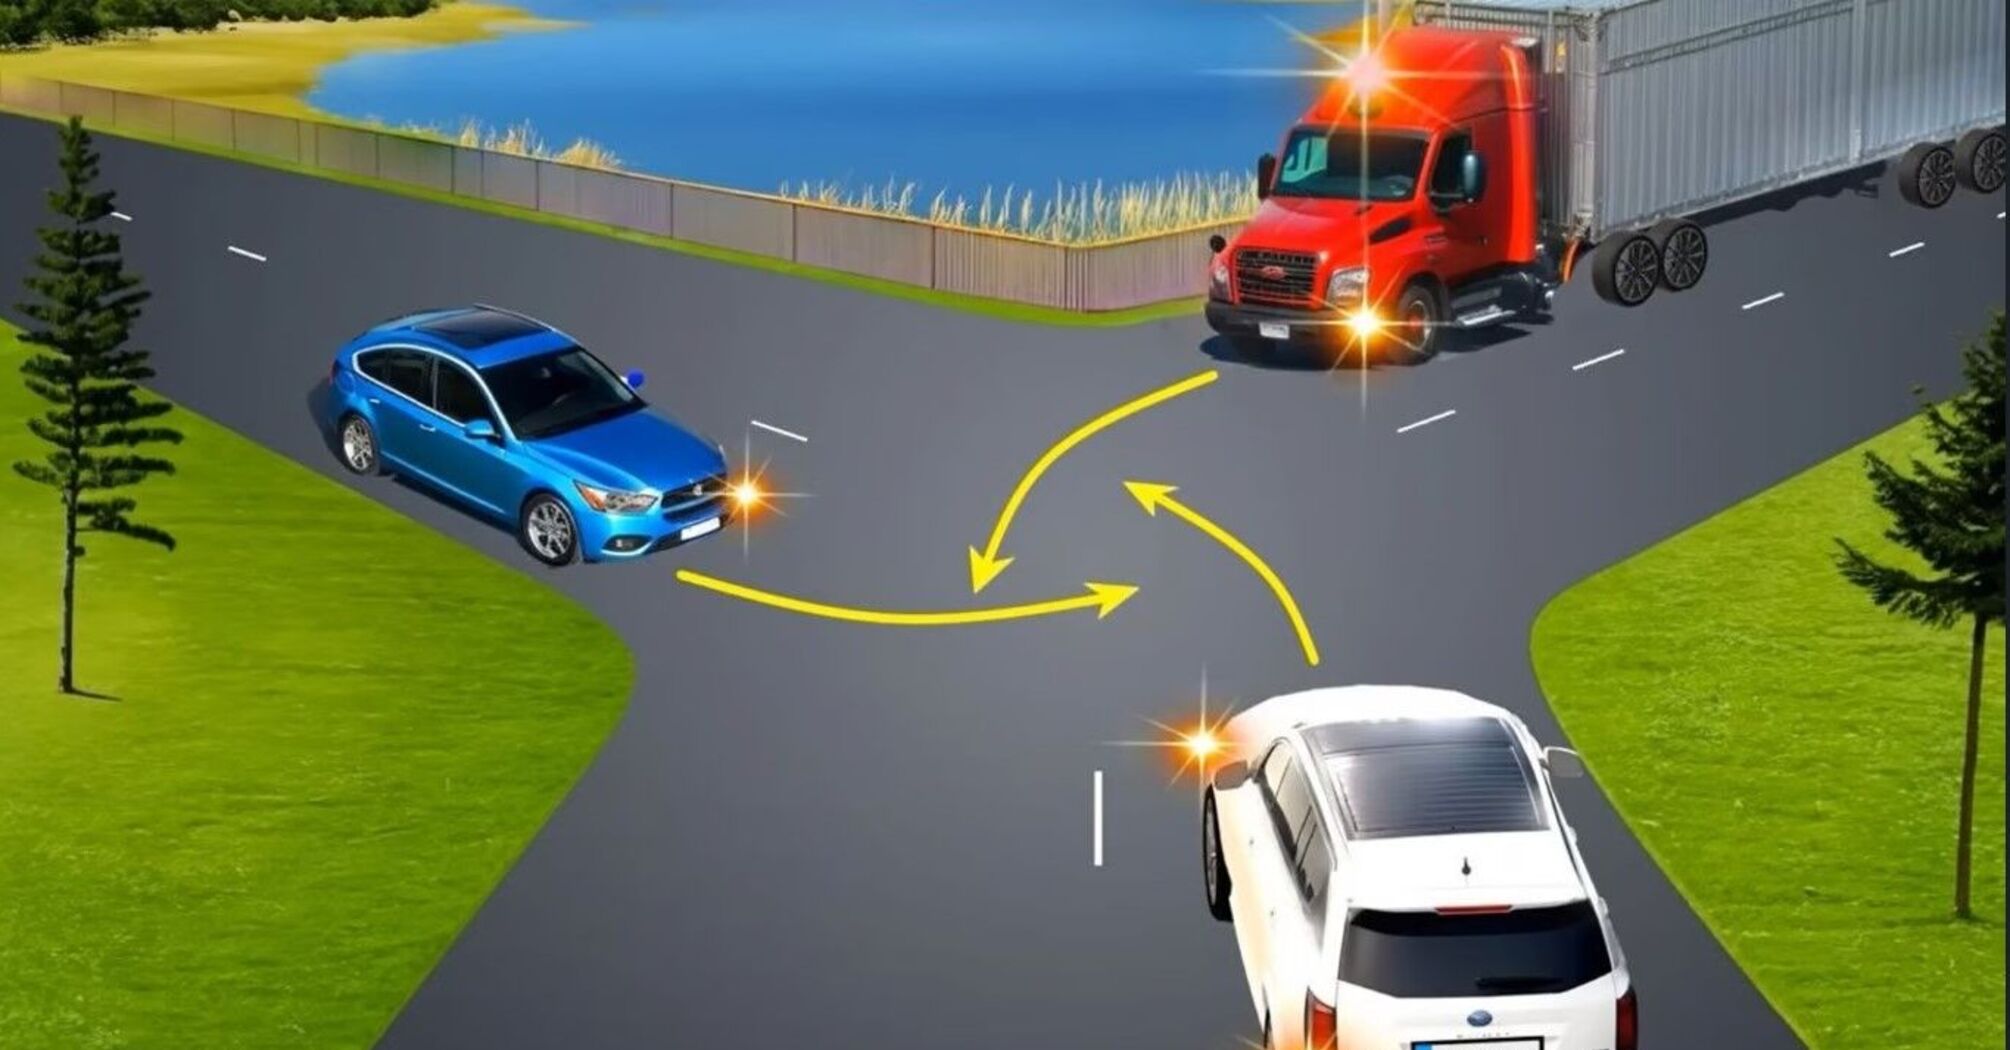 Як роз'їхатися на перехресті водіям, якщо всі вони мають перешкоду праворуч: цікава задача з ПДР